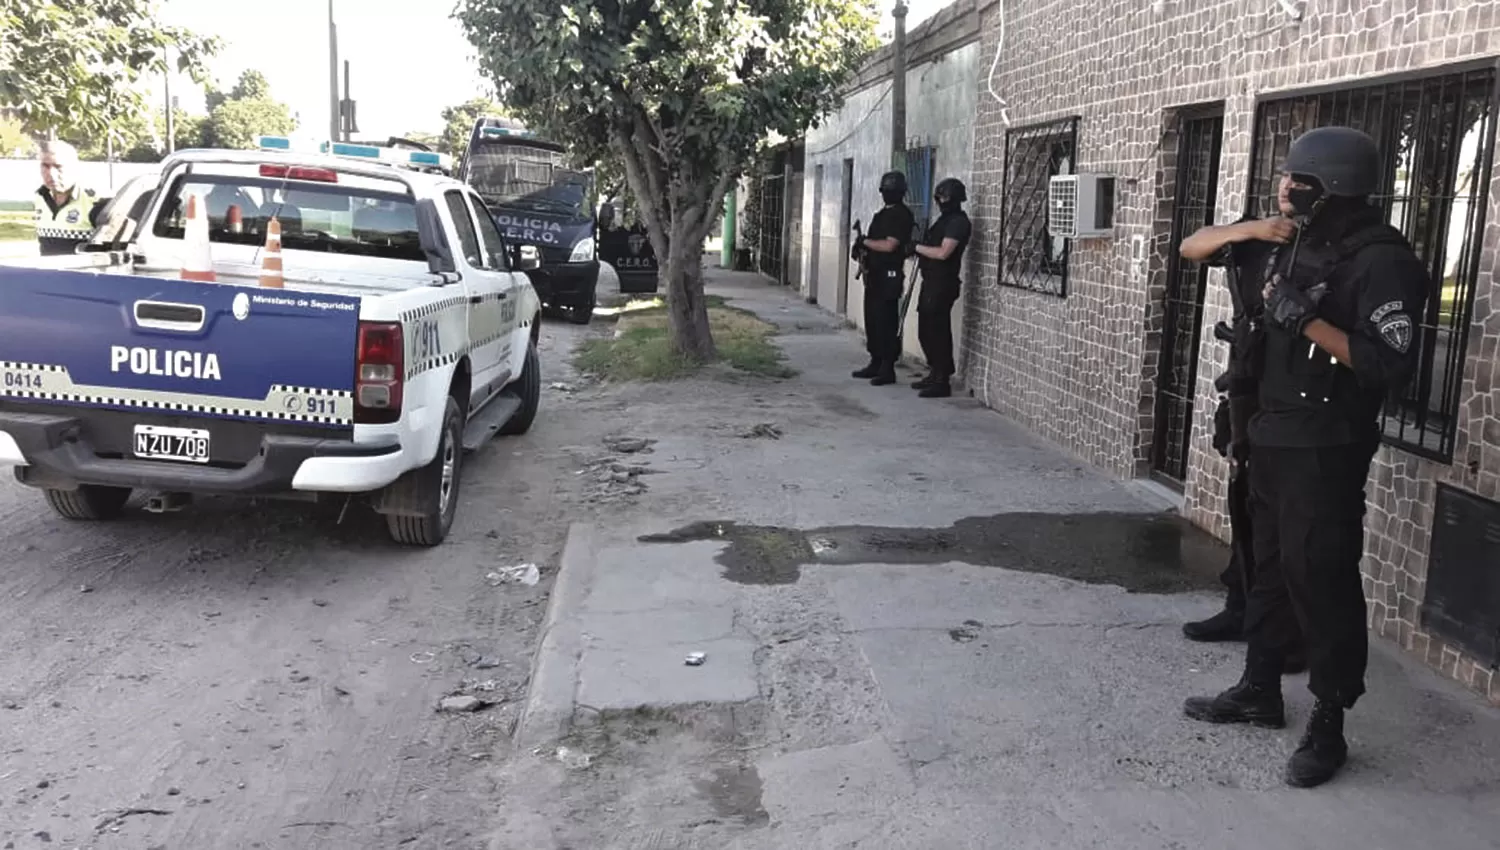 PROTECCIÓN A PRIMERA HORA. La Policía, después de que Ríos fuera liberado, montó un fuerte operativo de seguridad en el barrio de San Cayetano.